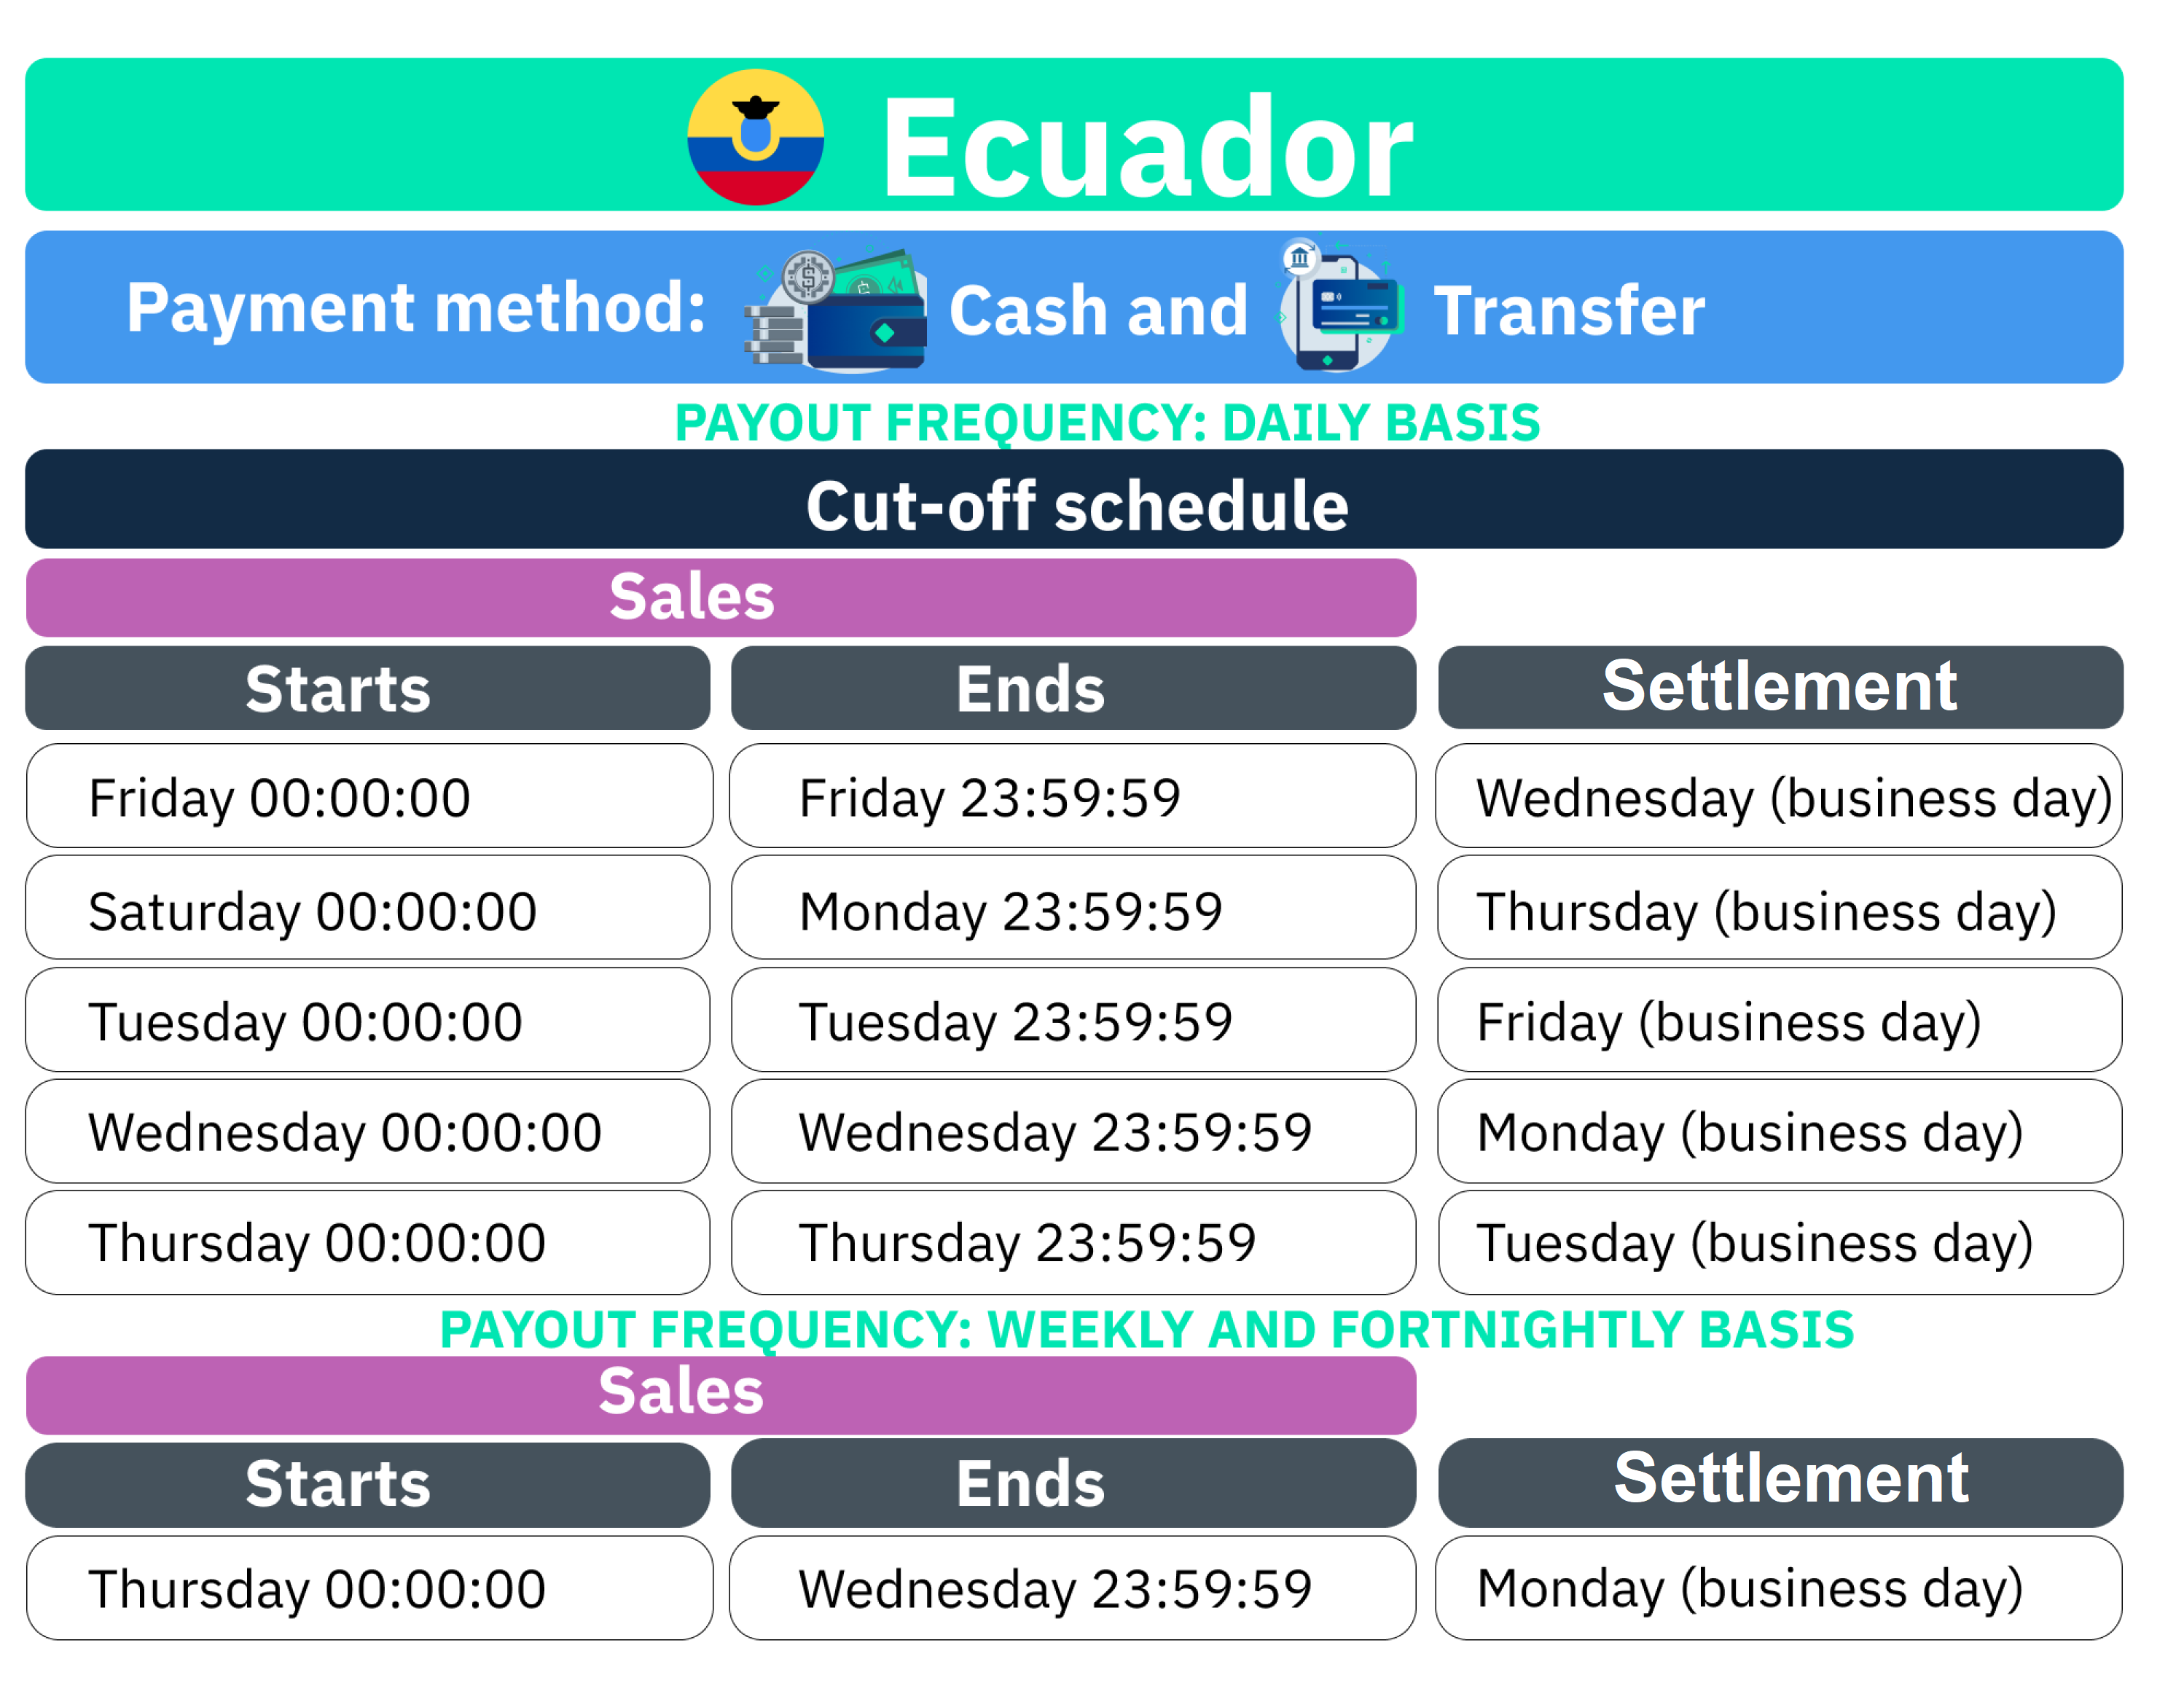 Correcciones Centro de Soporte liquidación-cash and transfer-Ecuador-final.png